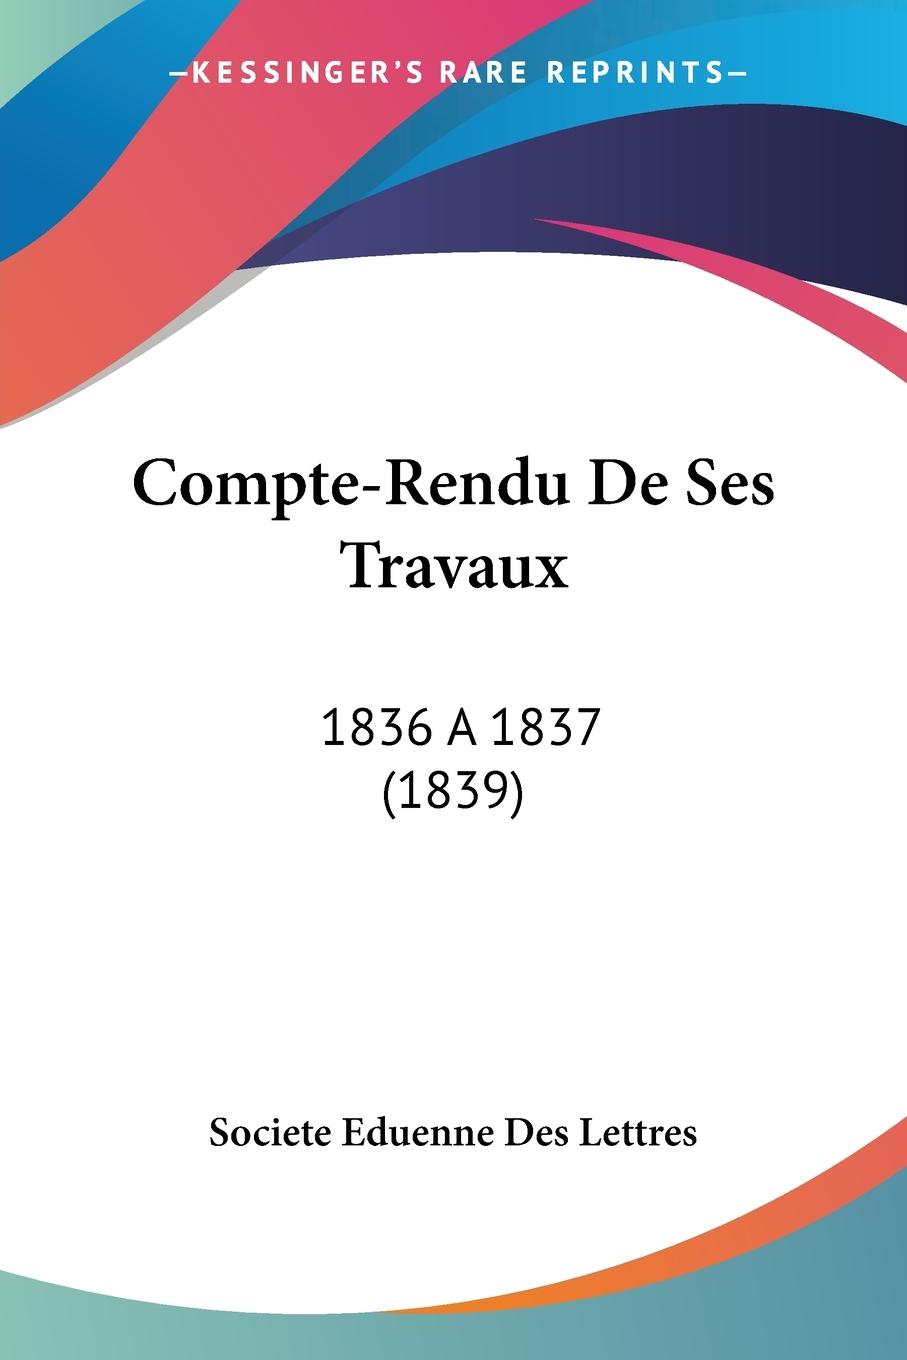 Compte-Rendu De Ses Travaux - Societe Eduenne Des Lettres